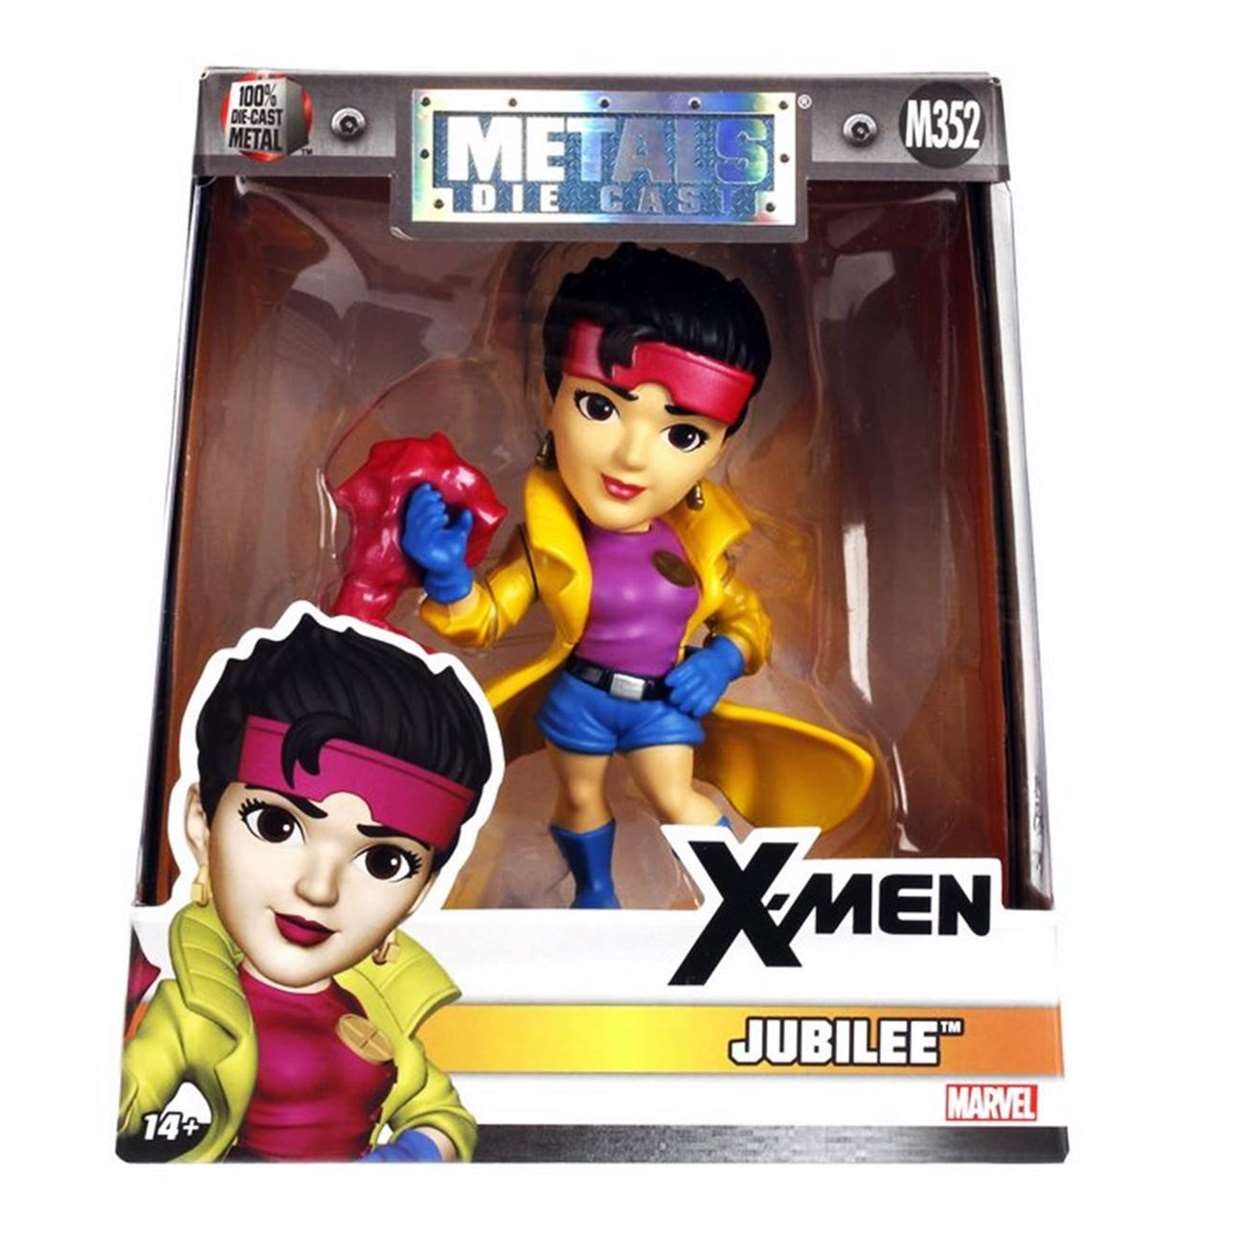 Jubilee M352 X-Men Figura Marvel Jada Toys Metal Die Cast